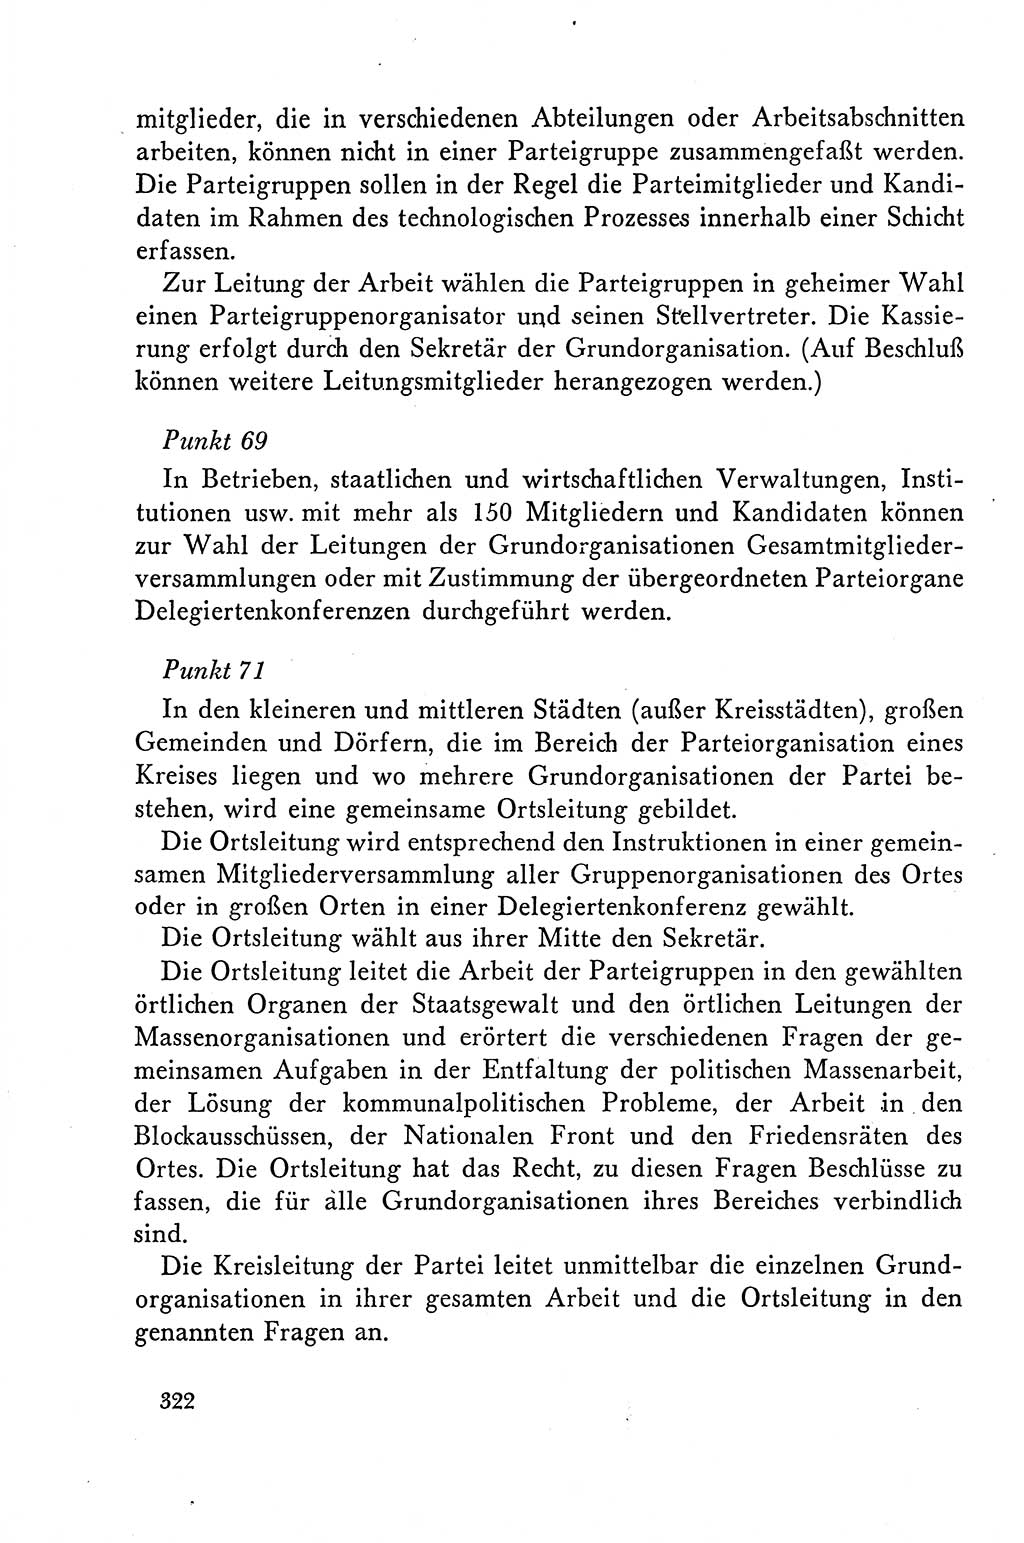 Dokumente der Sozialistischen Einheitspartei Deutschlands (SED) [Deutsche Demokratische Republik (DDR)] 1958-1959, Seite 322 (Dok. SED DDR 1958-1959, S. 322)